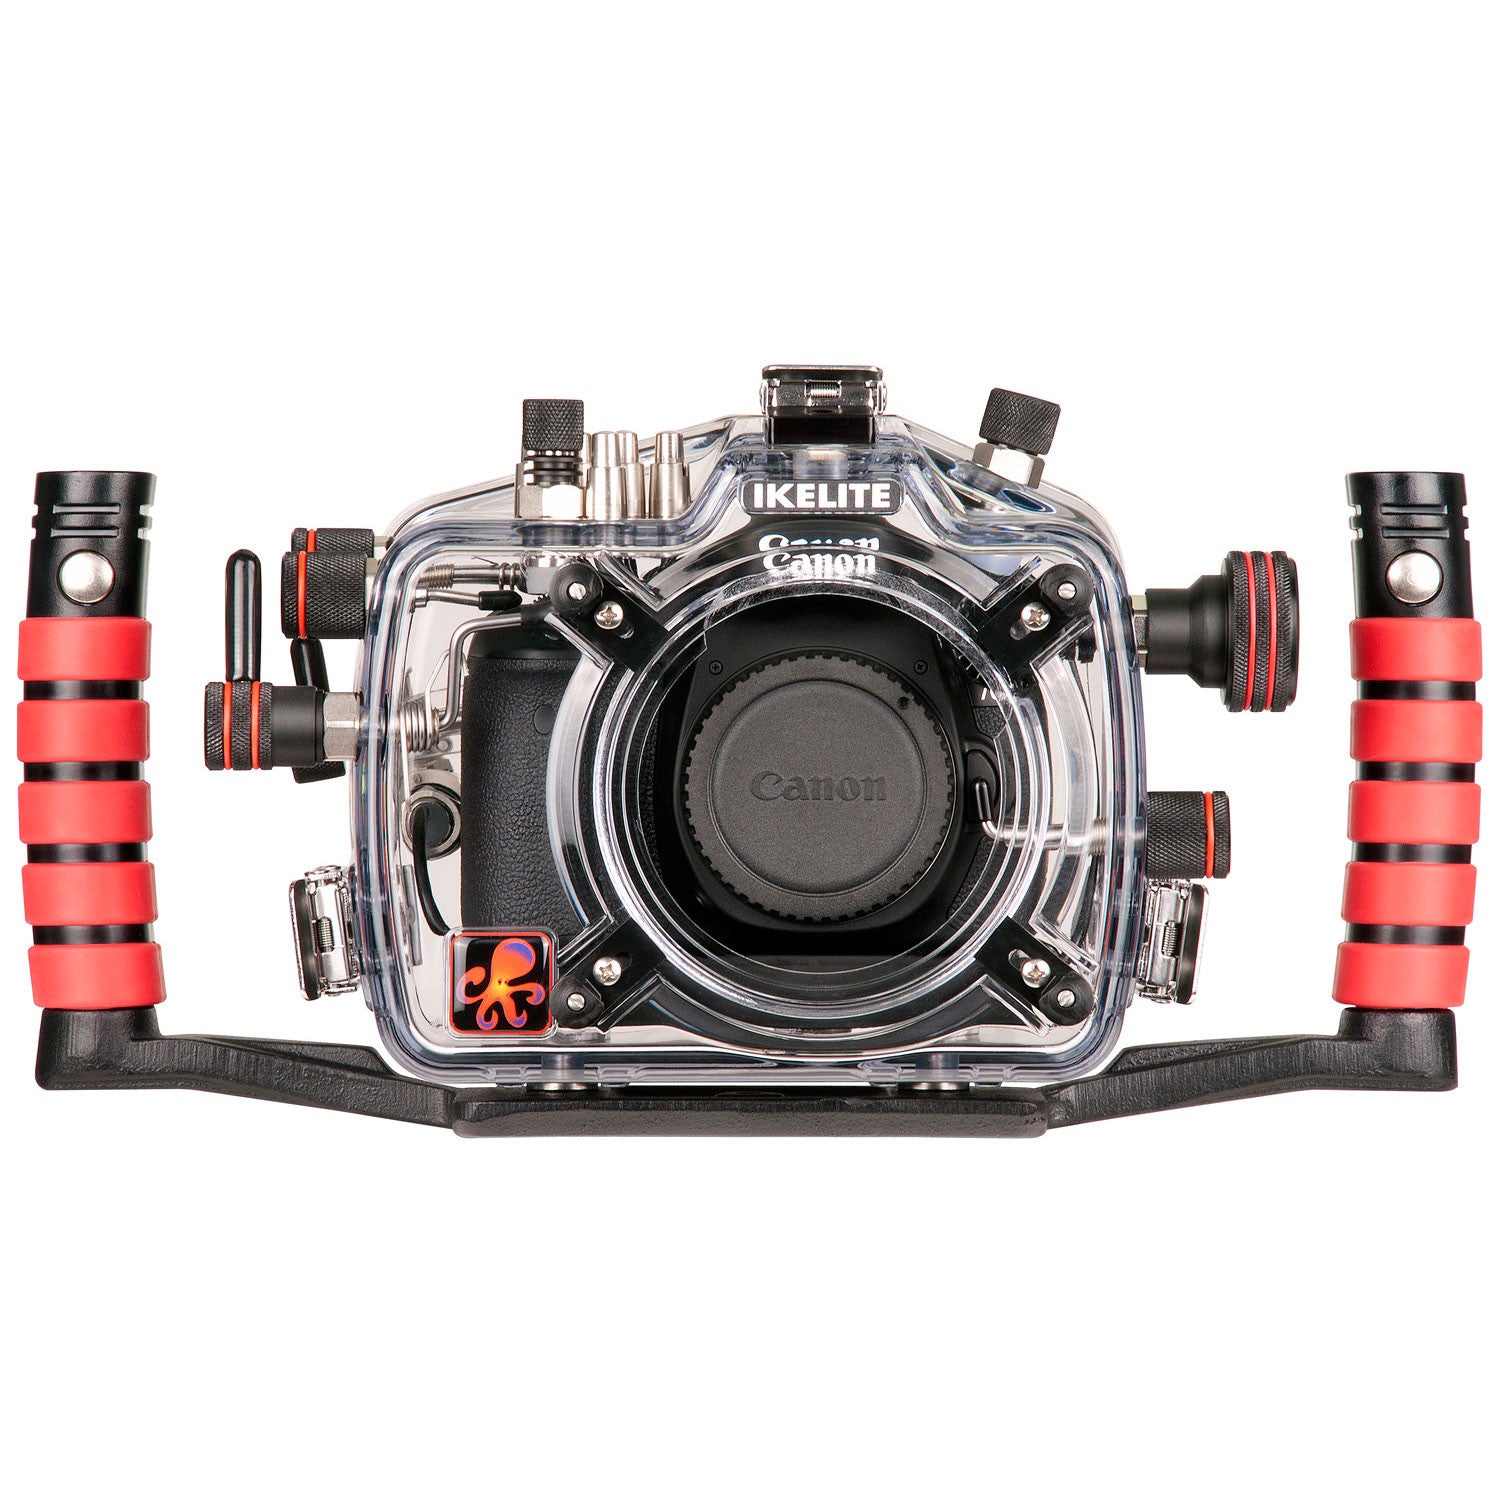 200FL Underwater TTL Housing for Canon EOS 70D DSLR Camera